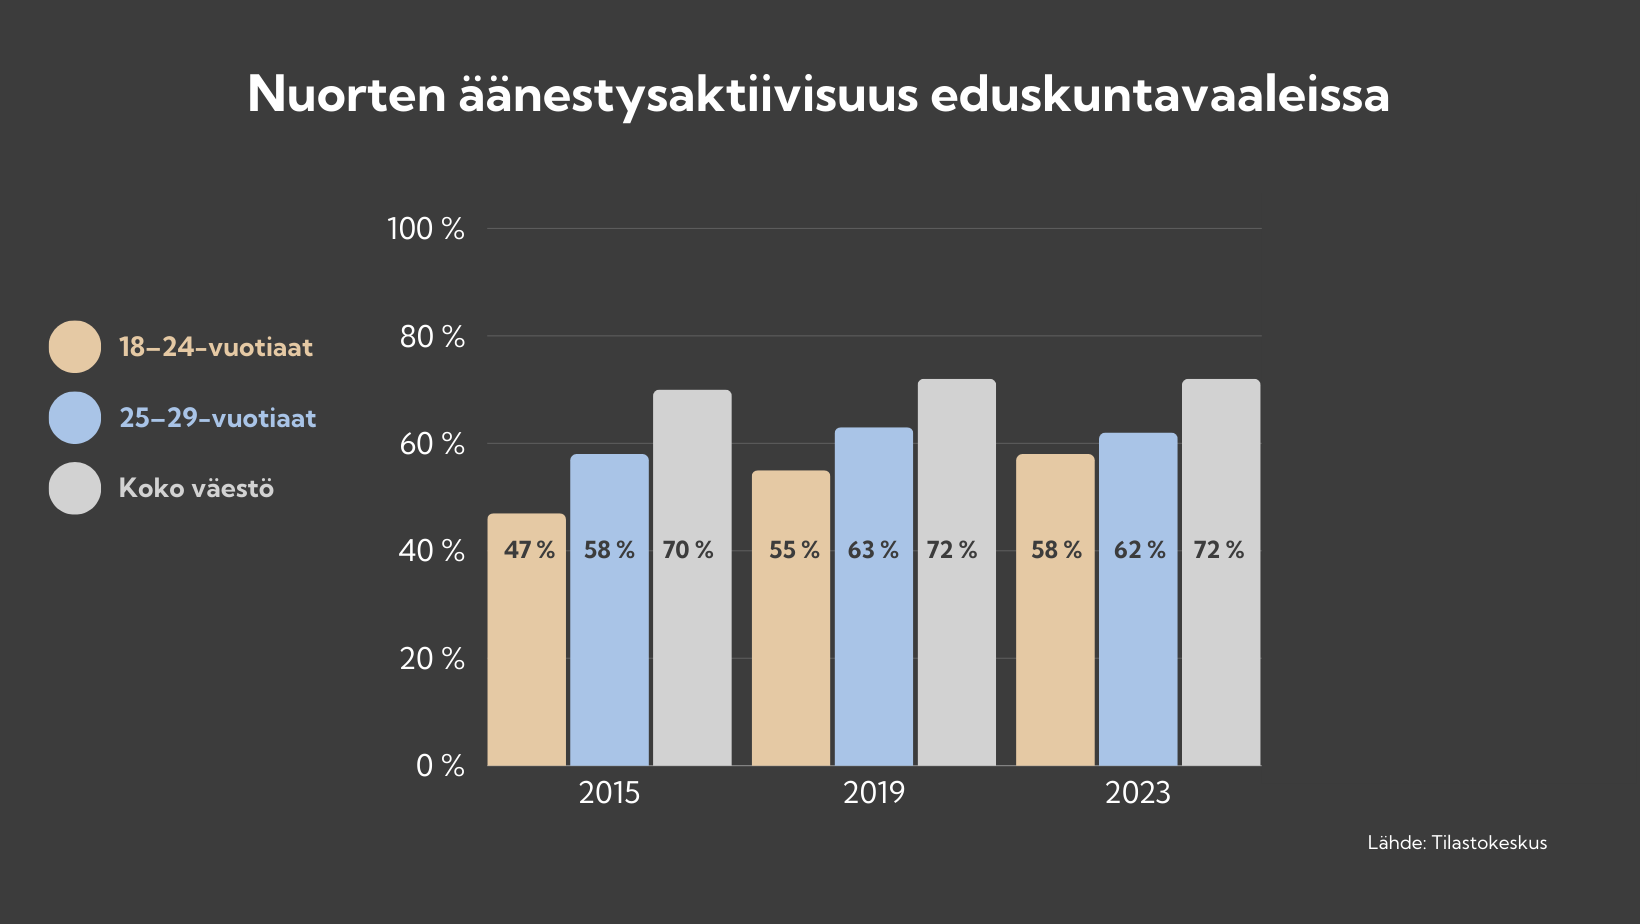 Pylväsdiagrammi nuorten äänestysaktiivisuudesta eduskuntavaaleissa vuosina 2015, 2019 ja 2023. Verrattavat ikäjaoittelut diagrammissa ovat 18-24-vuotiaat, 25-29-vuotiaat ja koko väestö. 